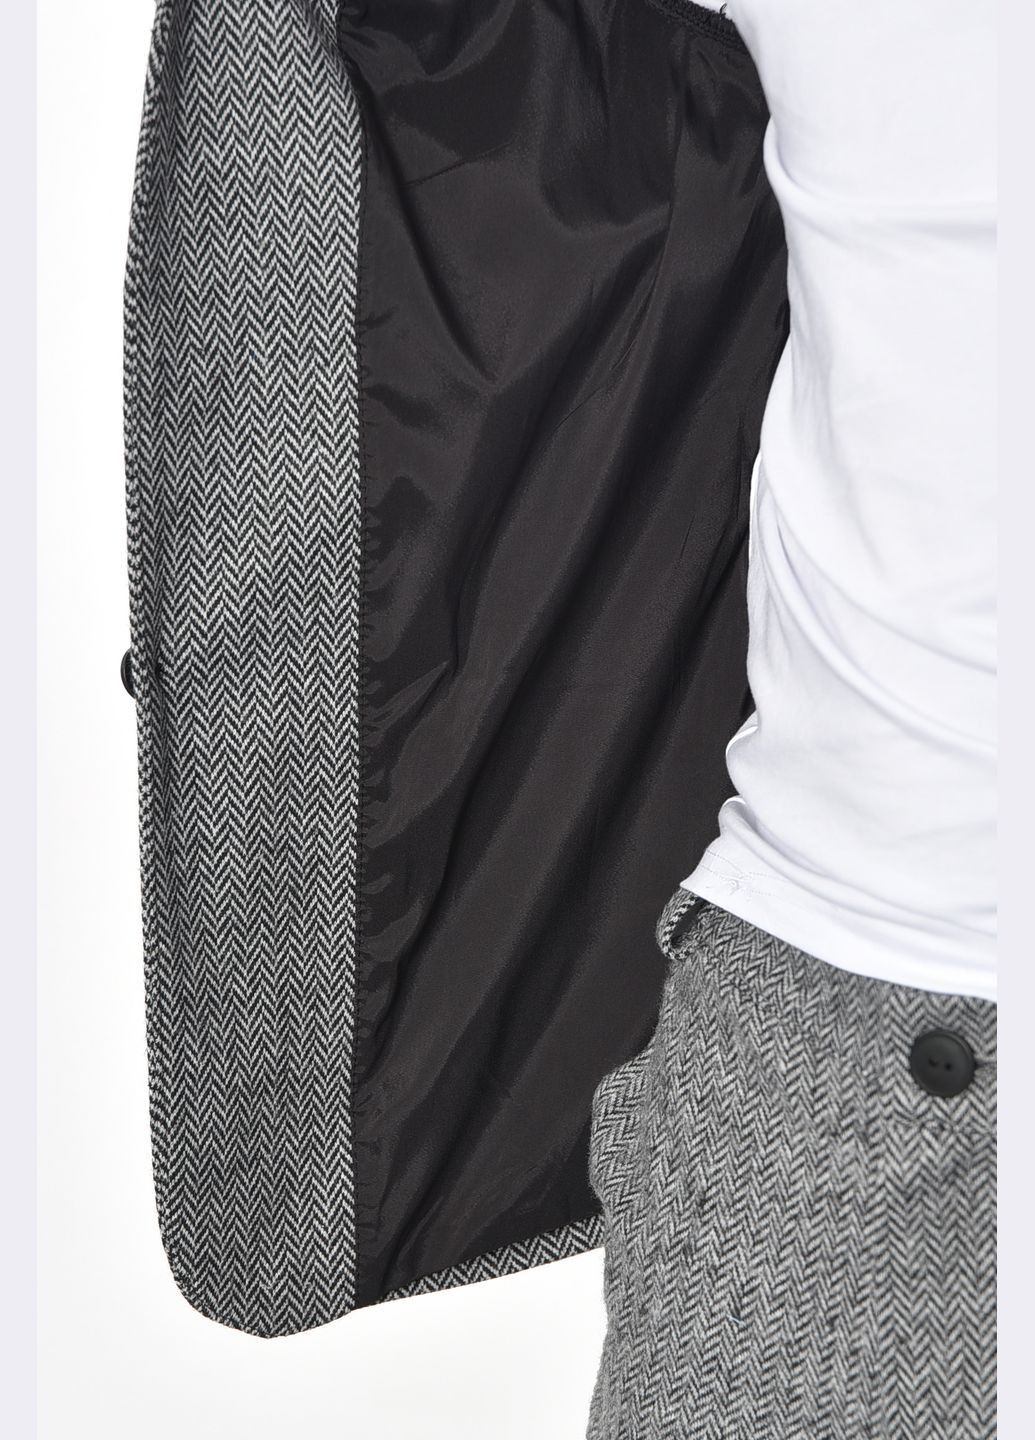 Світло-сірий демісезонний костюм чоловічий світло-сірого кольору брючний Let's Shop